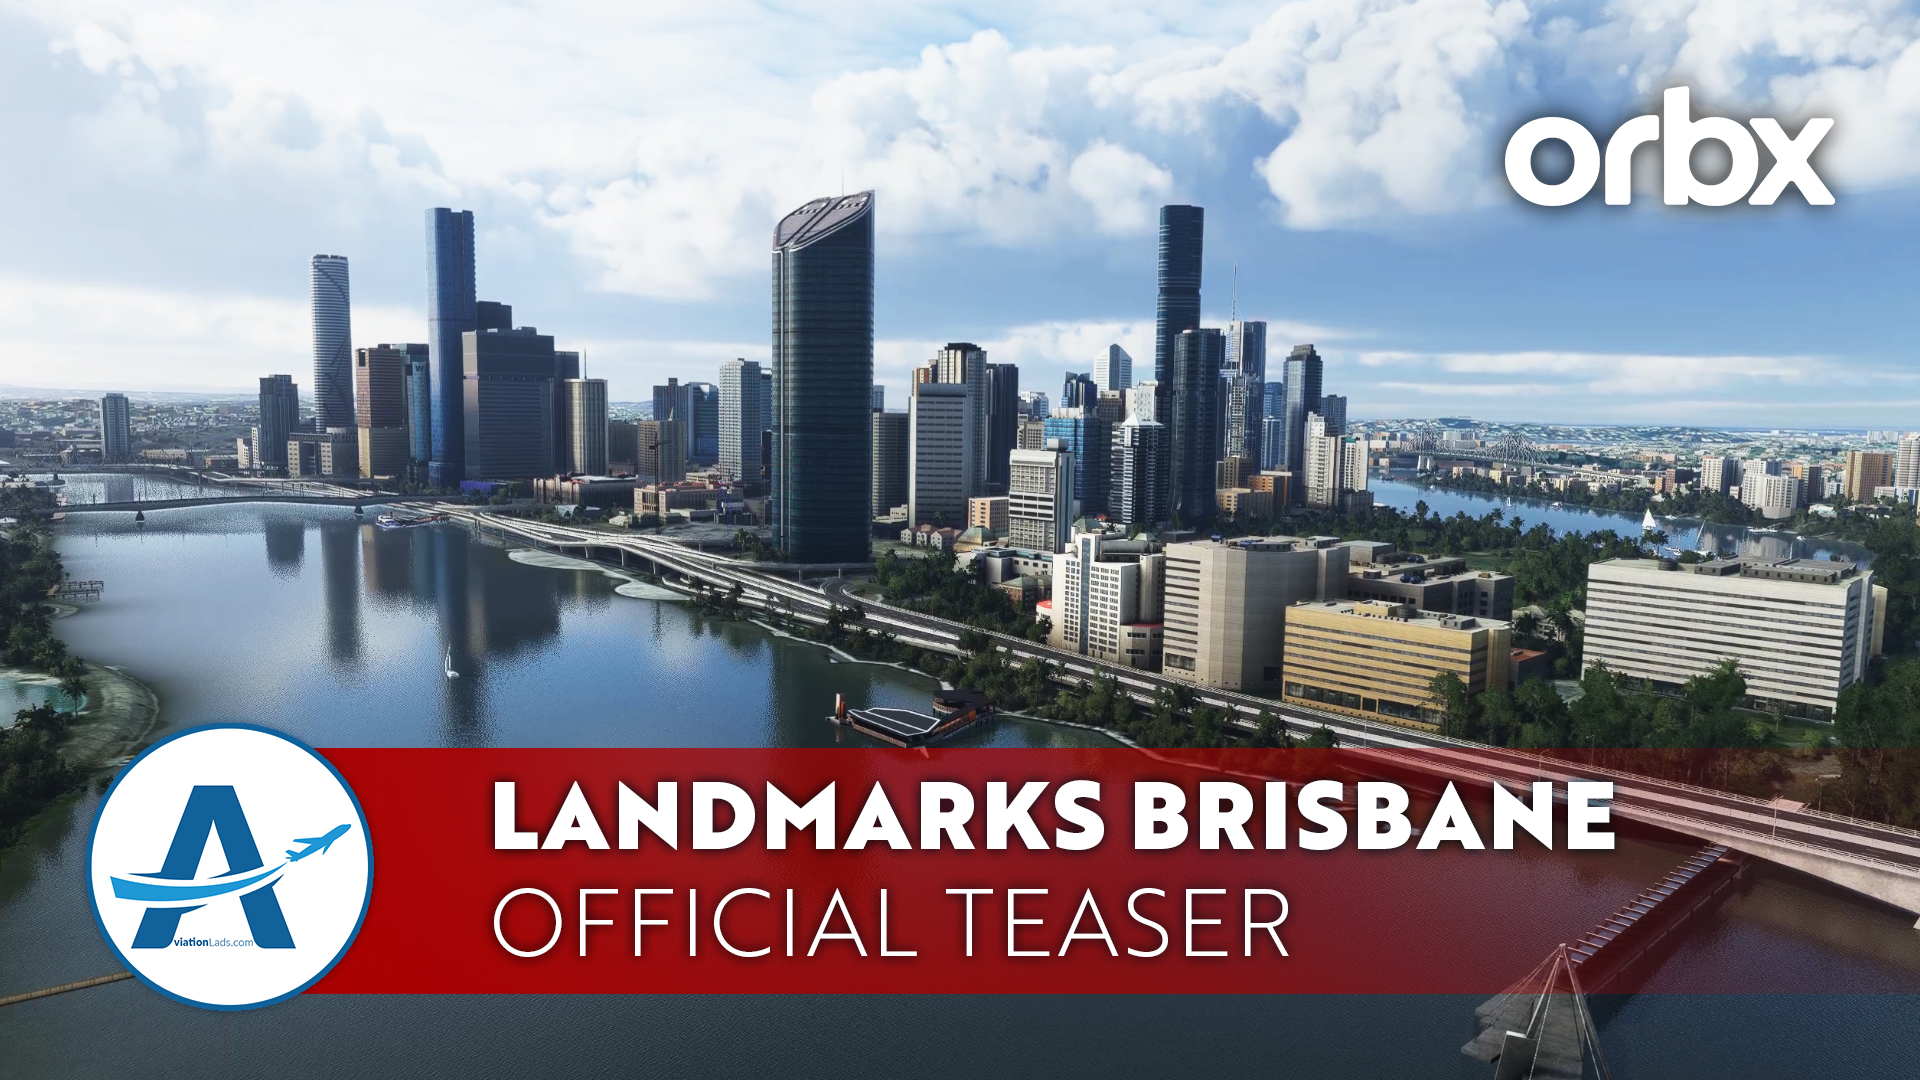 [TEASER] Orbx Landmarks Brisbane